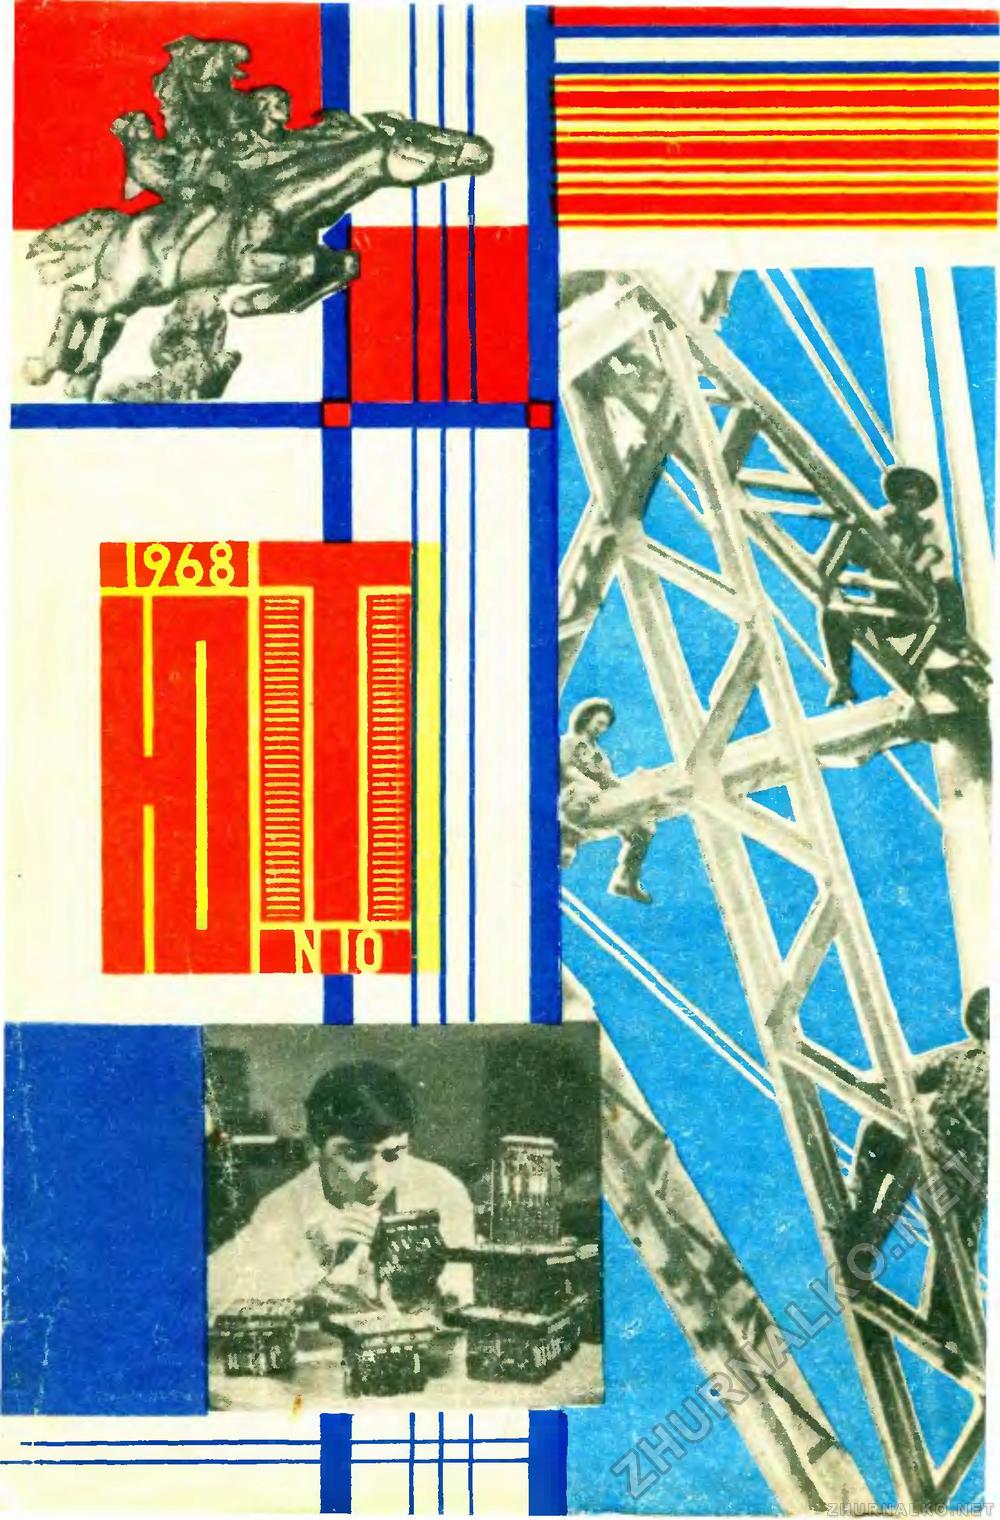   1968-10,  1